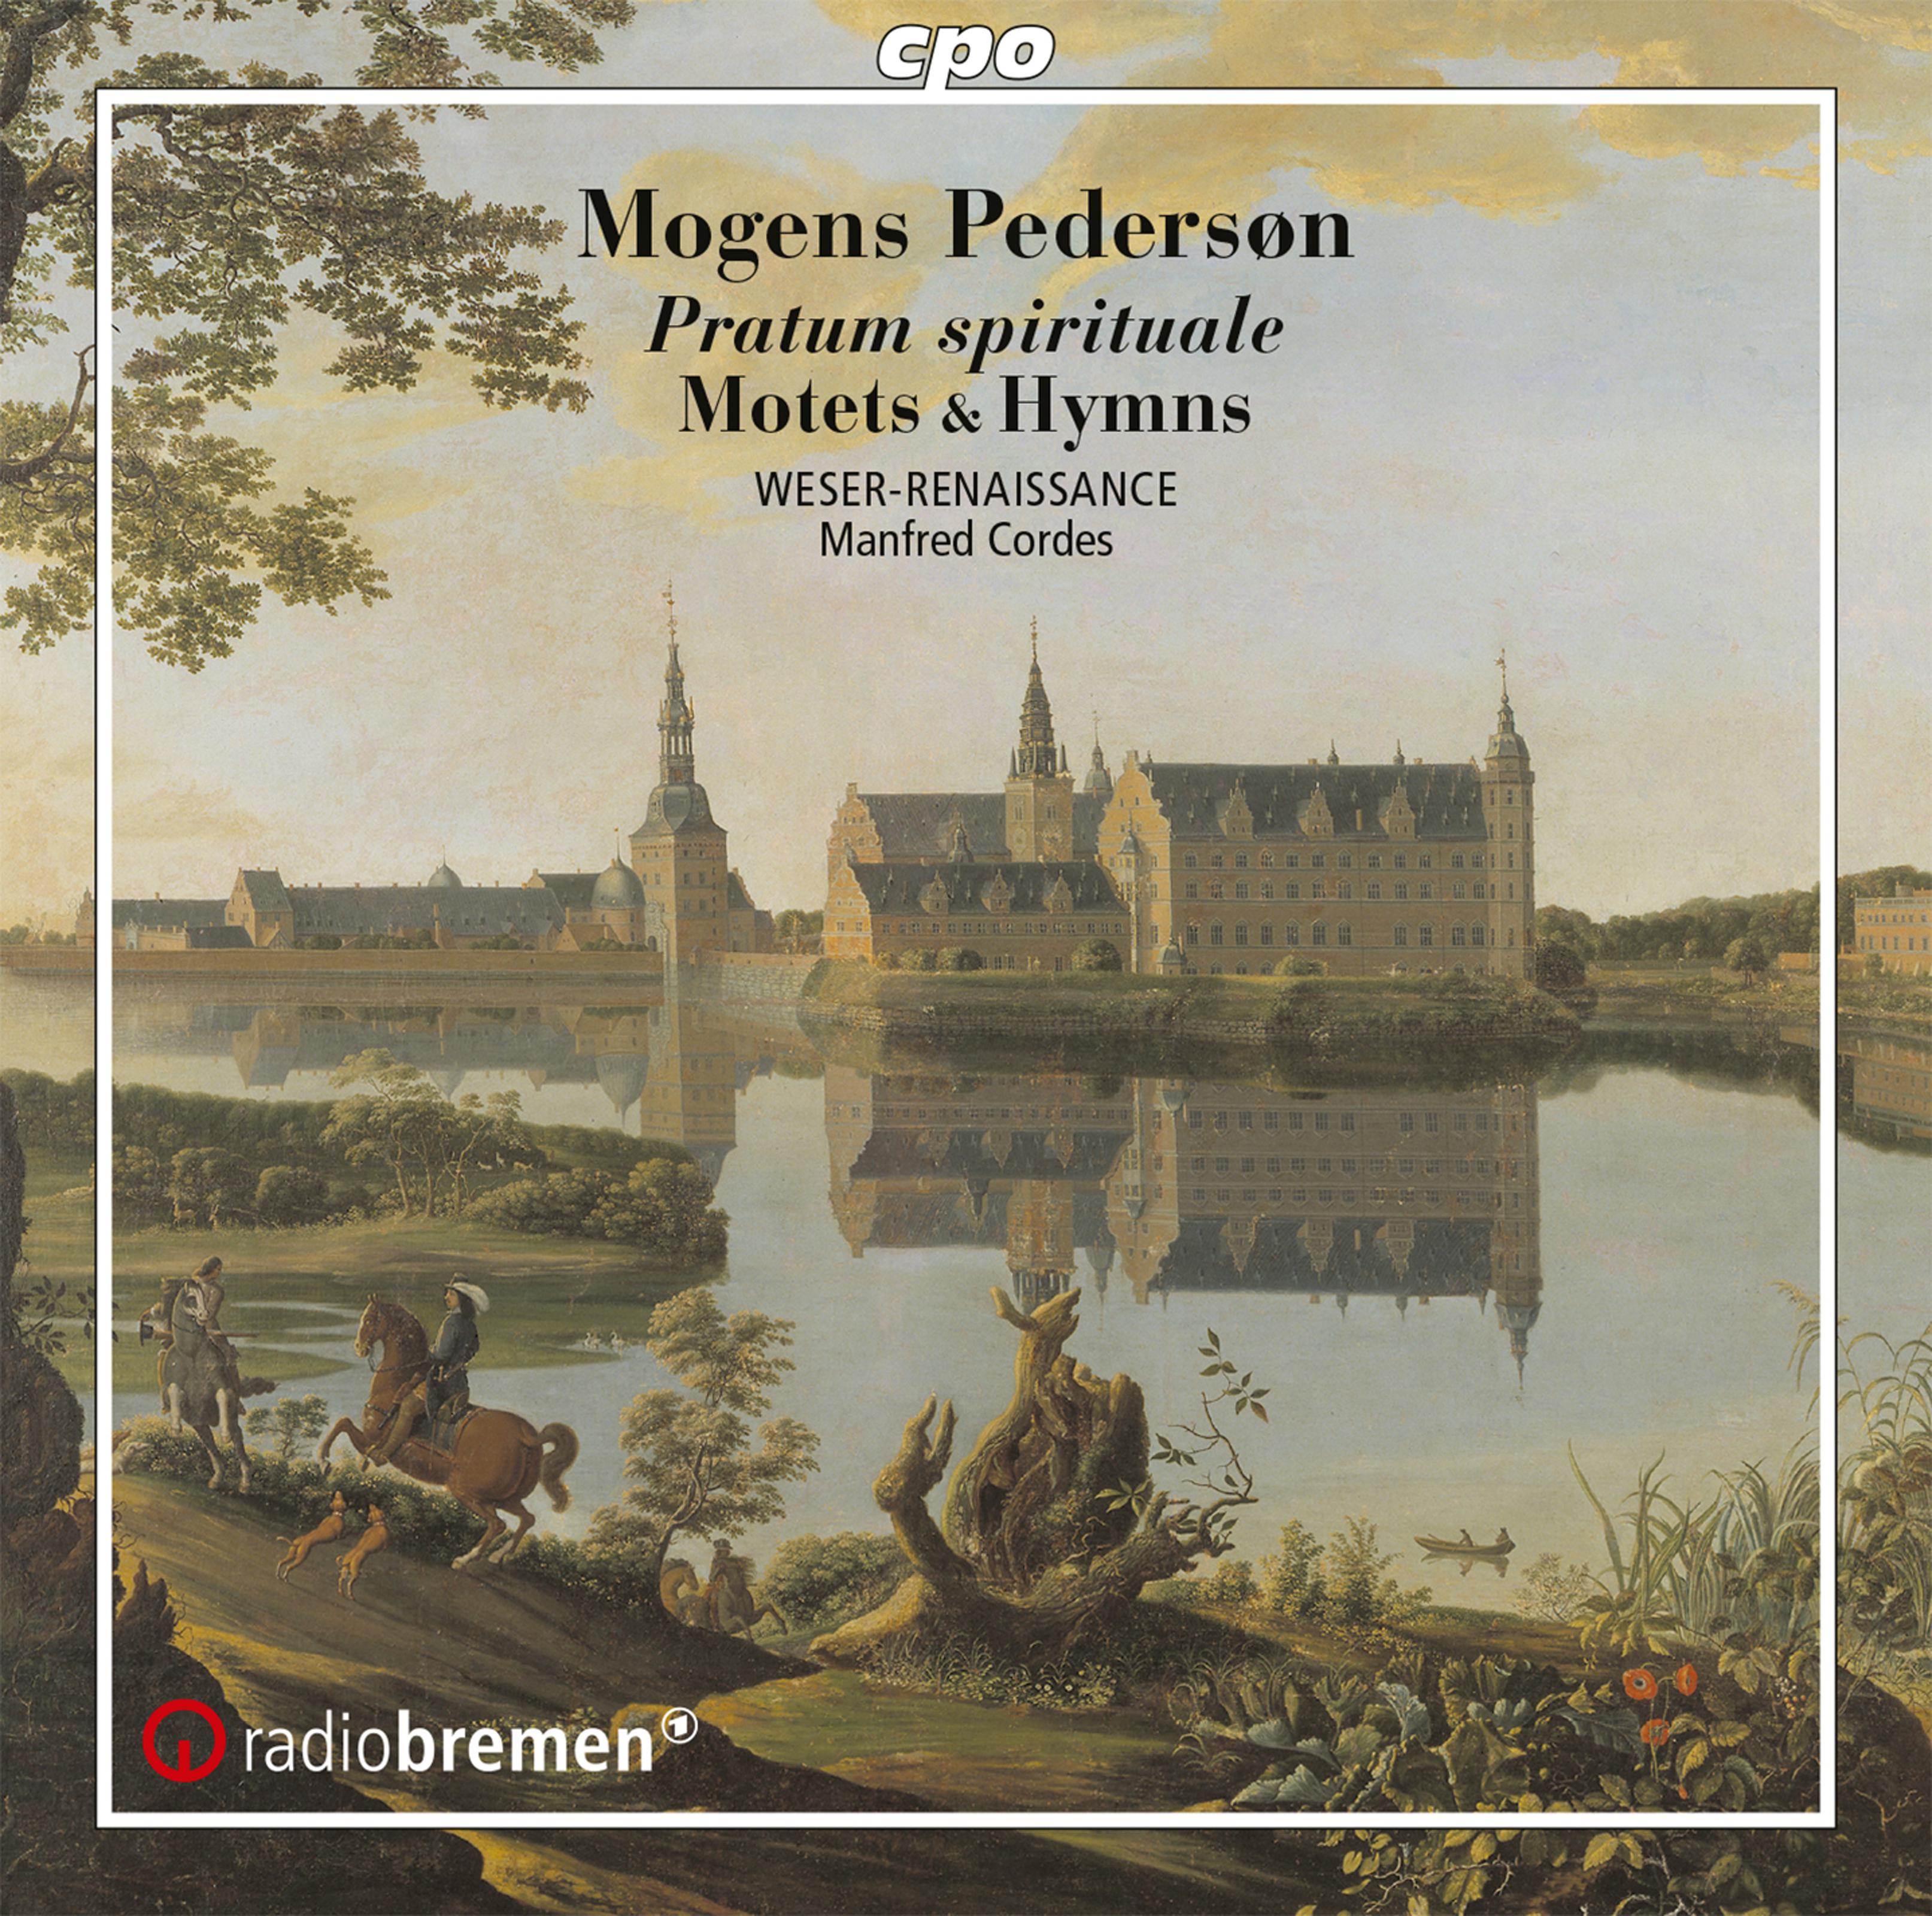 Weser-Renaissance Bremen - Pratum spirituale (Excerpts):No. 35, Laudate Dominum